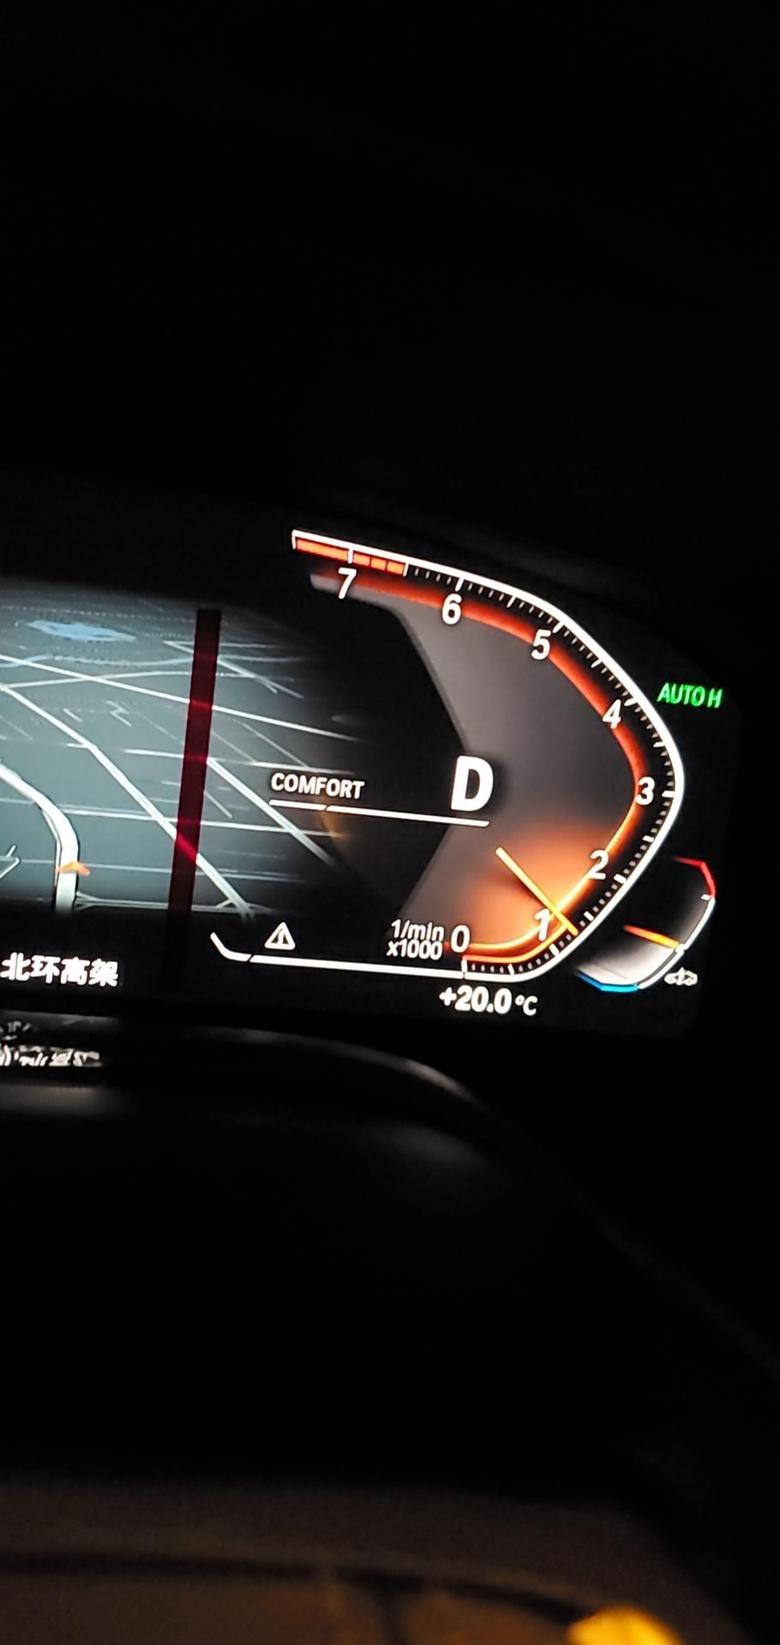 宝马7系 740新车这个转速表下面的白色三角形警示是什么意思啊?